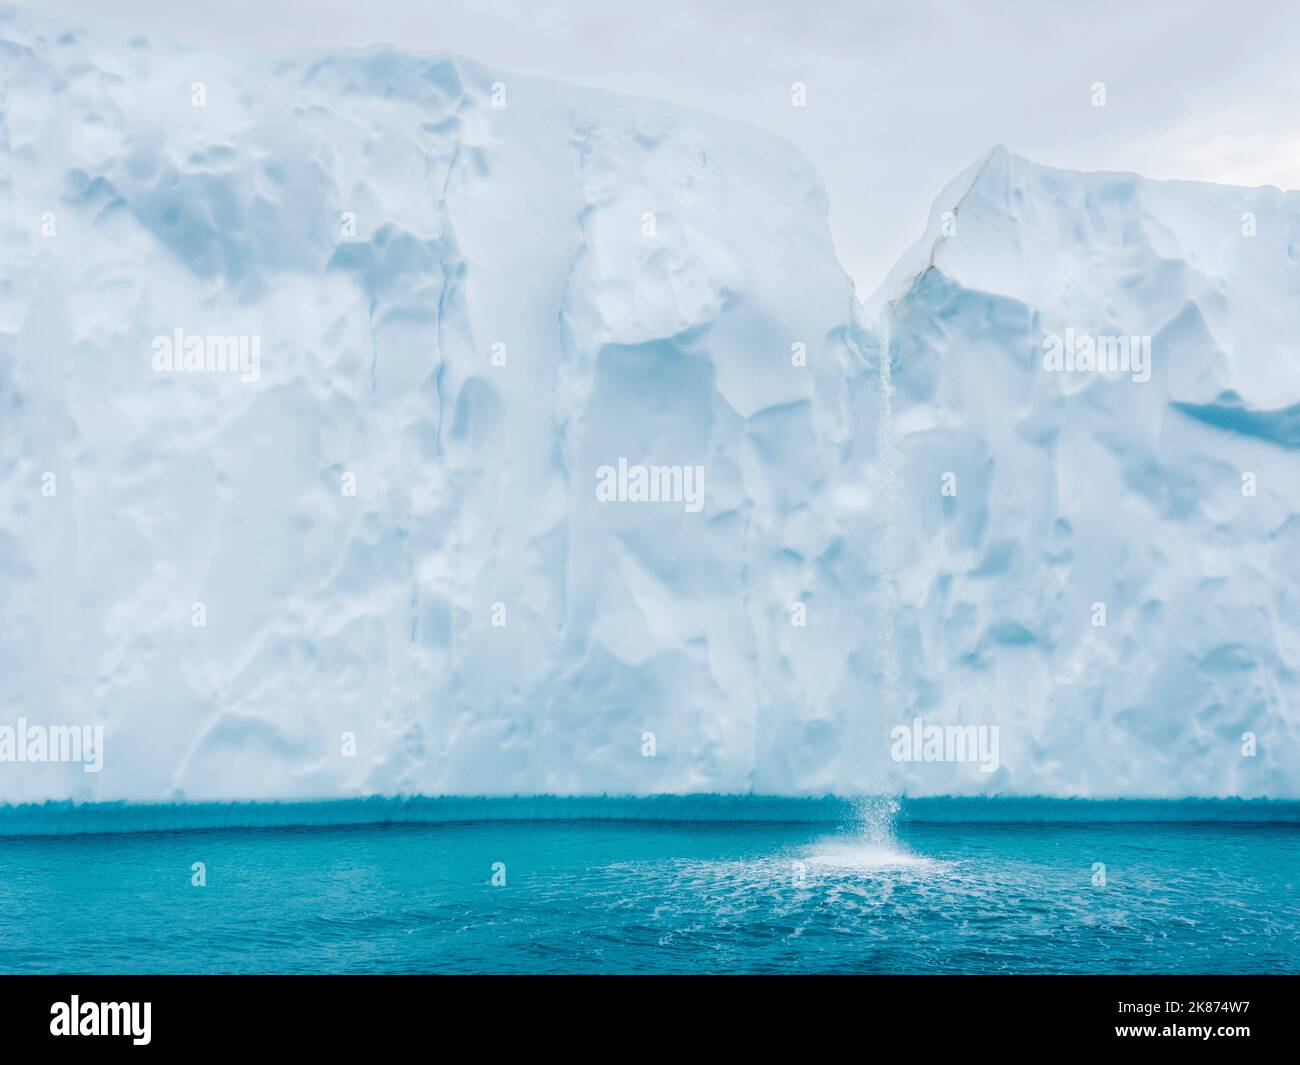 Una cascata di iceberg scioglienti dal Ilulissat Icefjord appena fuori dalla città di Ilulissat, Groenlandia, Danimarca, regioni polari Foto Stock